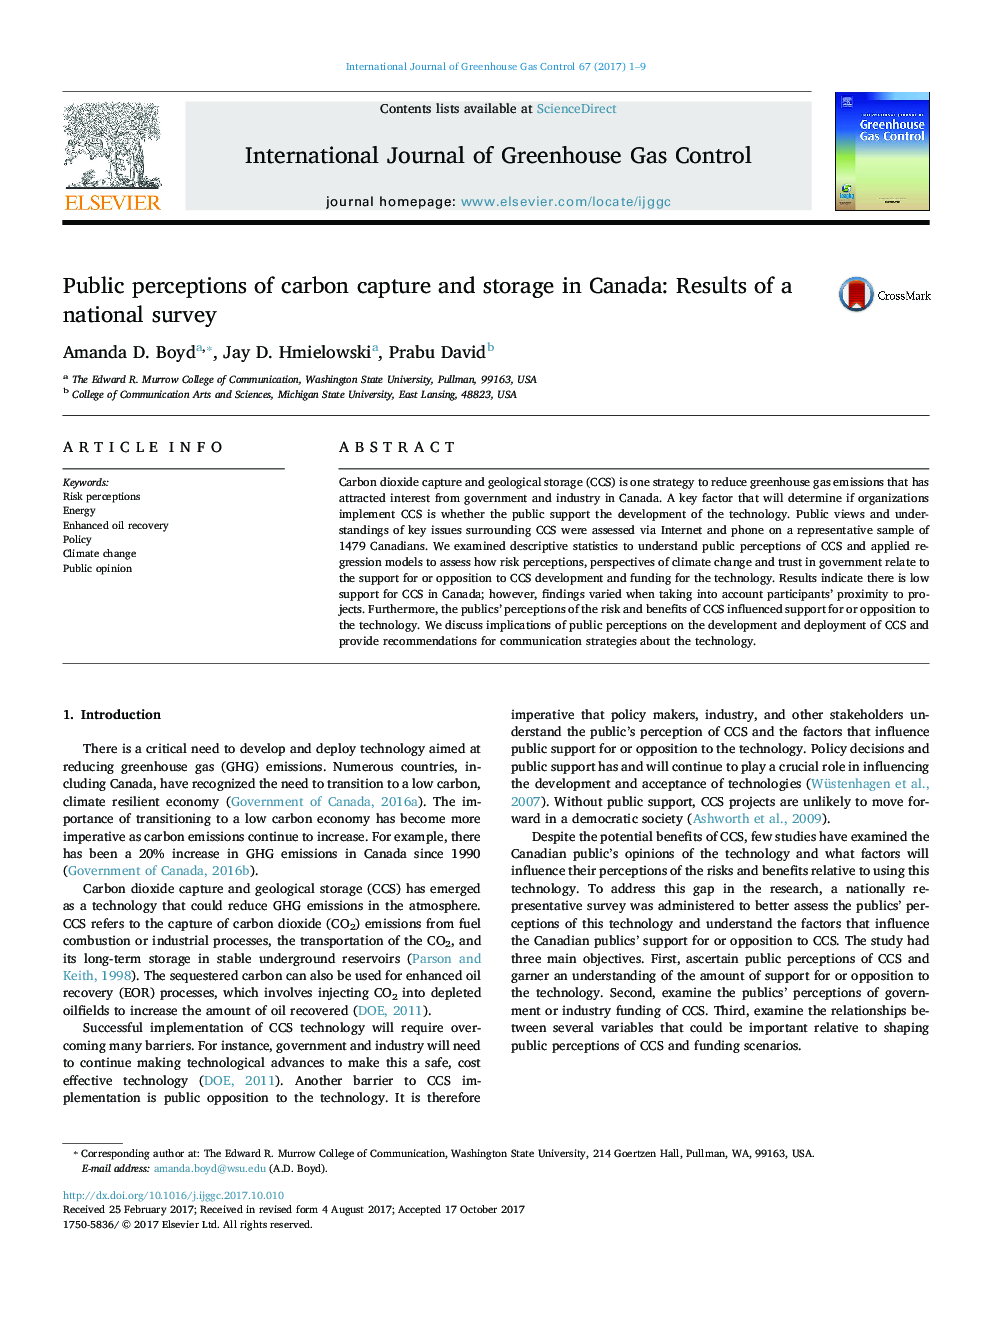 ادراک عمومی در مورد جذب و ذخیره کربن در کانادا: نتایج یک نظرسنجی ملی 